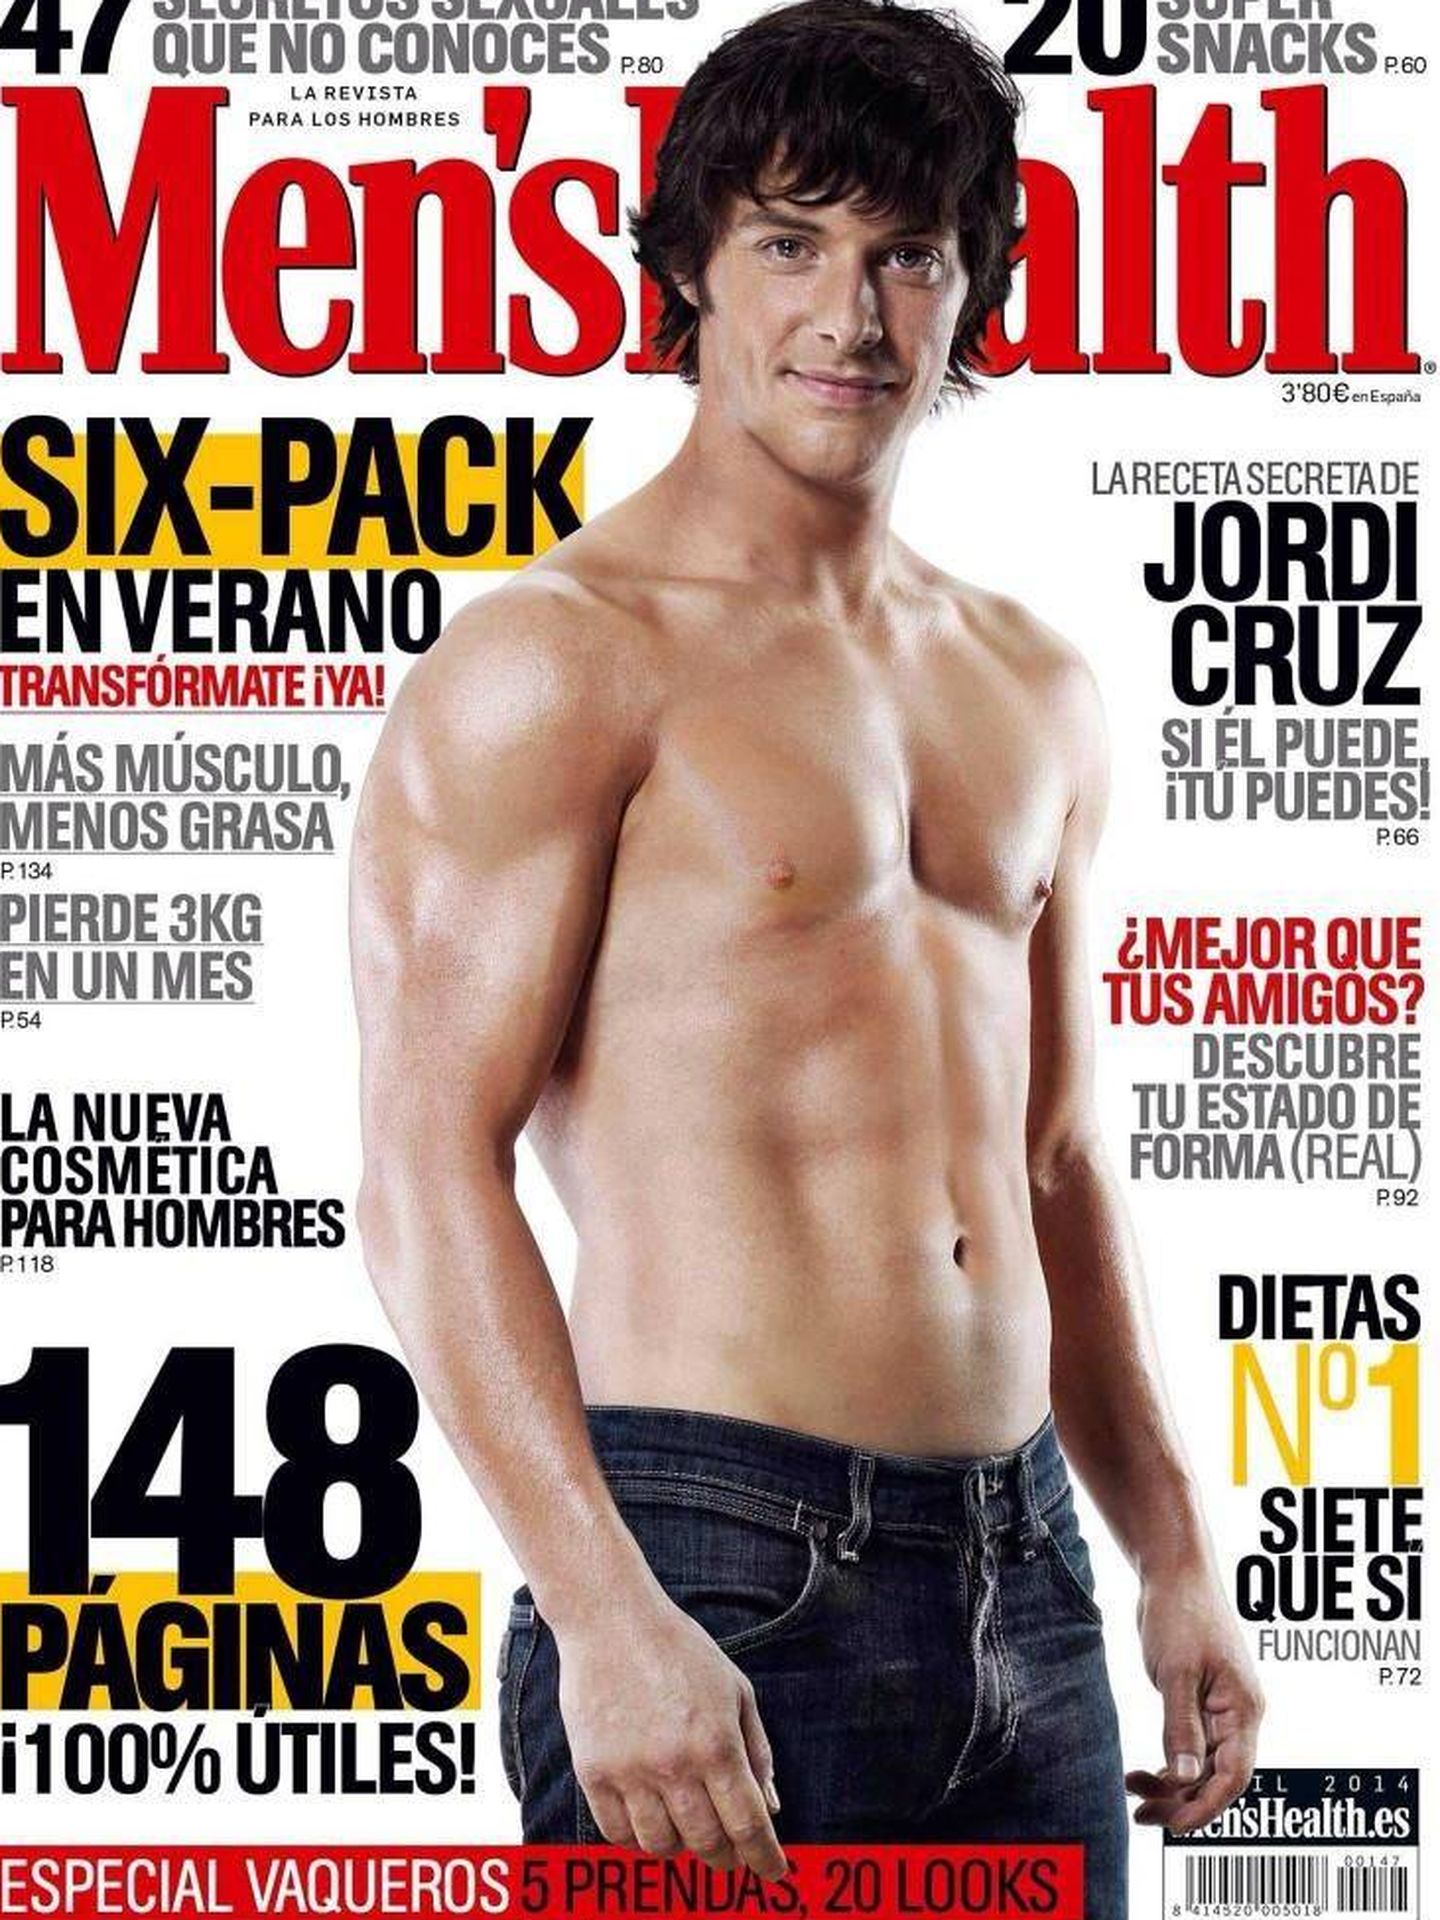 Jordi Cruz, en forma. (MH)